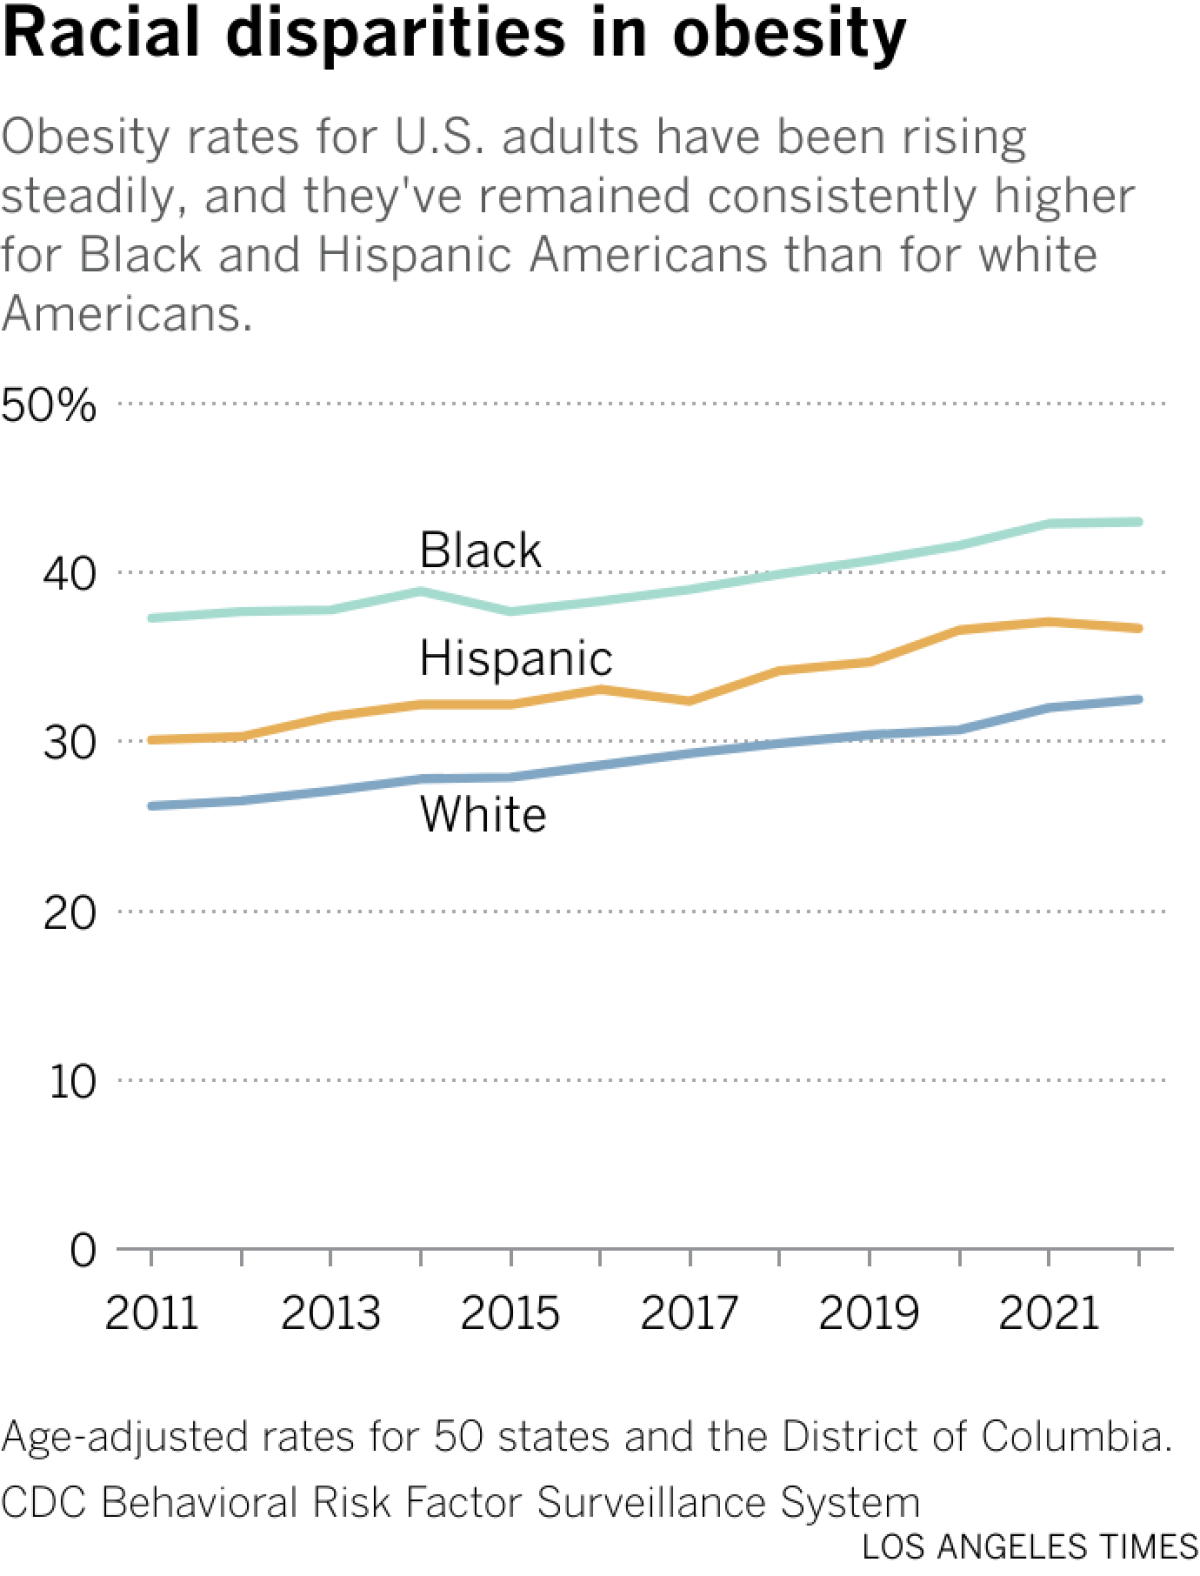 As taxas de obesidade entre adultos norte-americanos têm aumentado constantemente e permaneceram consistentemente mais altas entre os negros e hispano-americanos do que entre os americanos brancos.